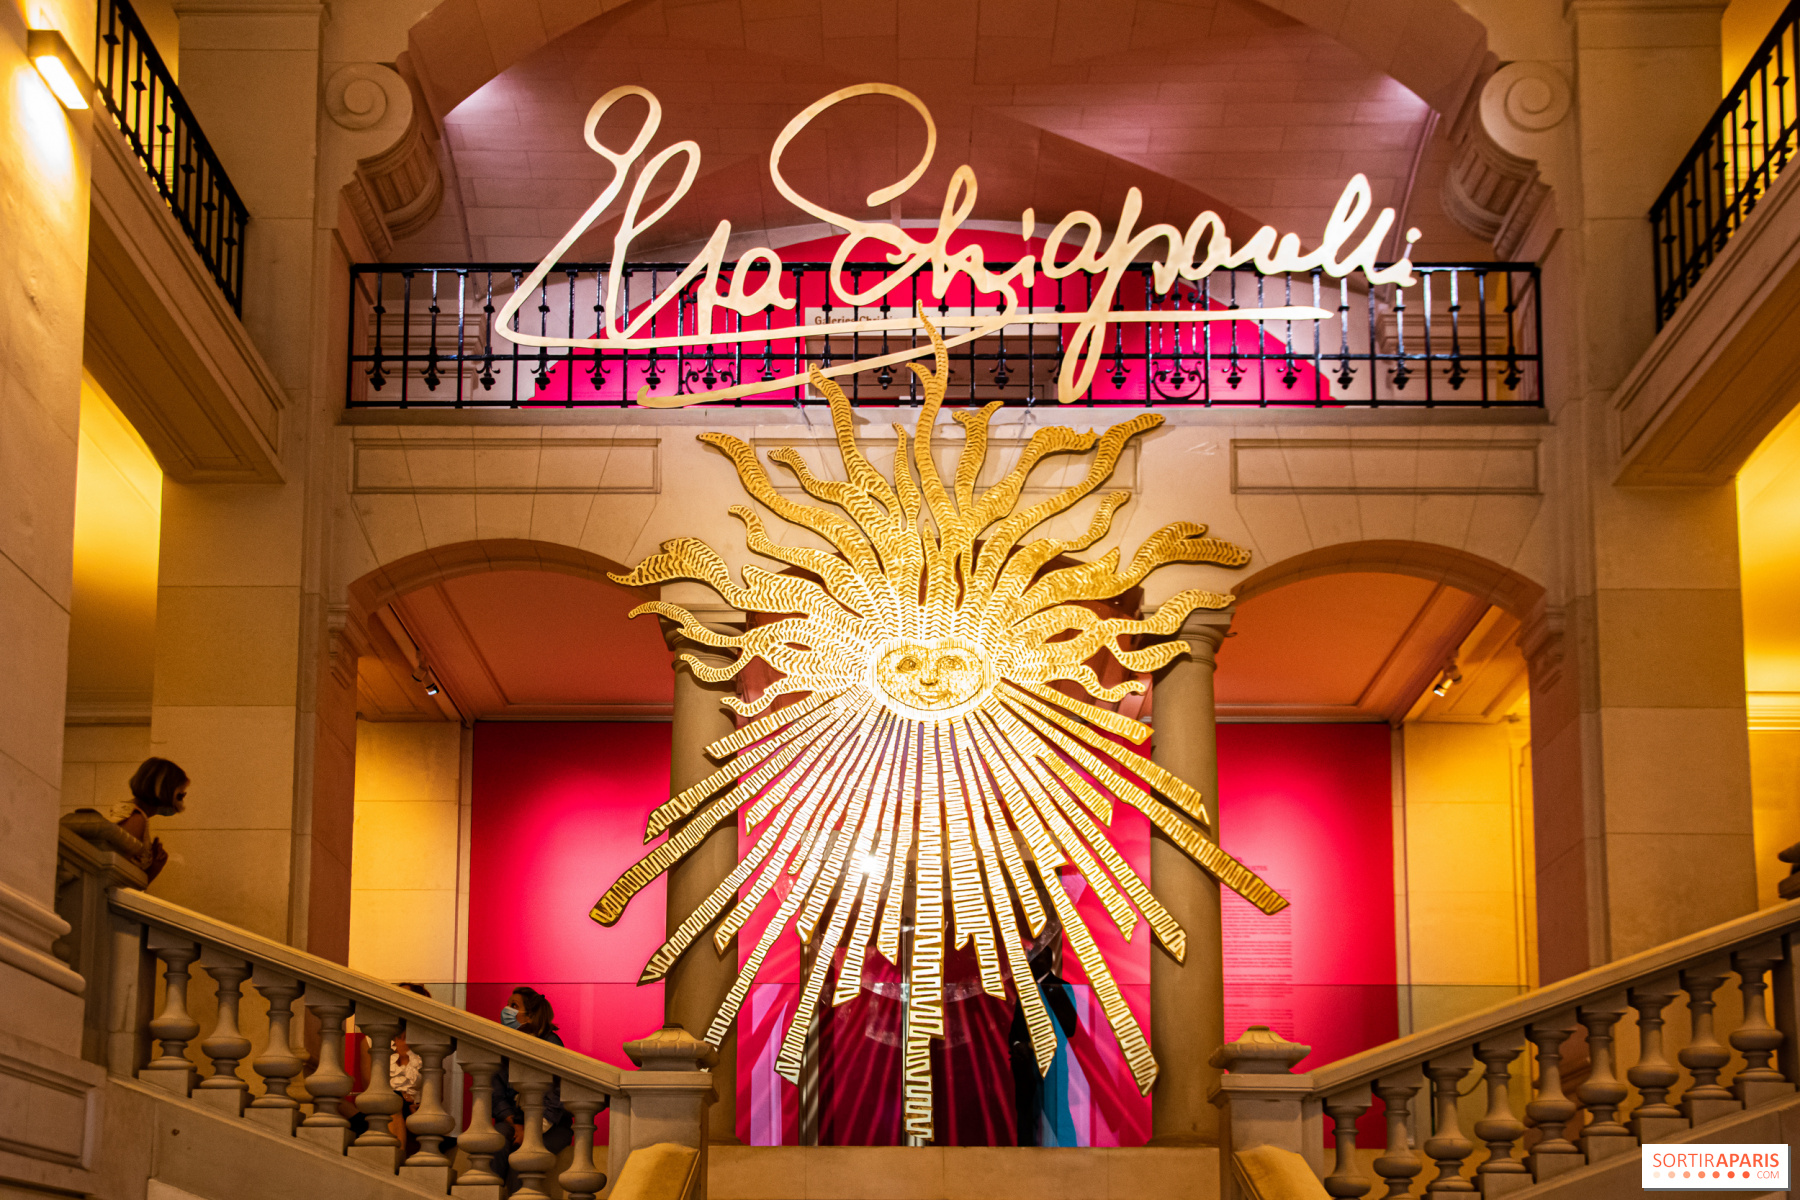 Shocking!, la exhibición dedicada a Elsa Schiaparelli en París